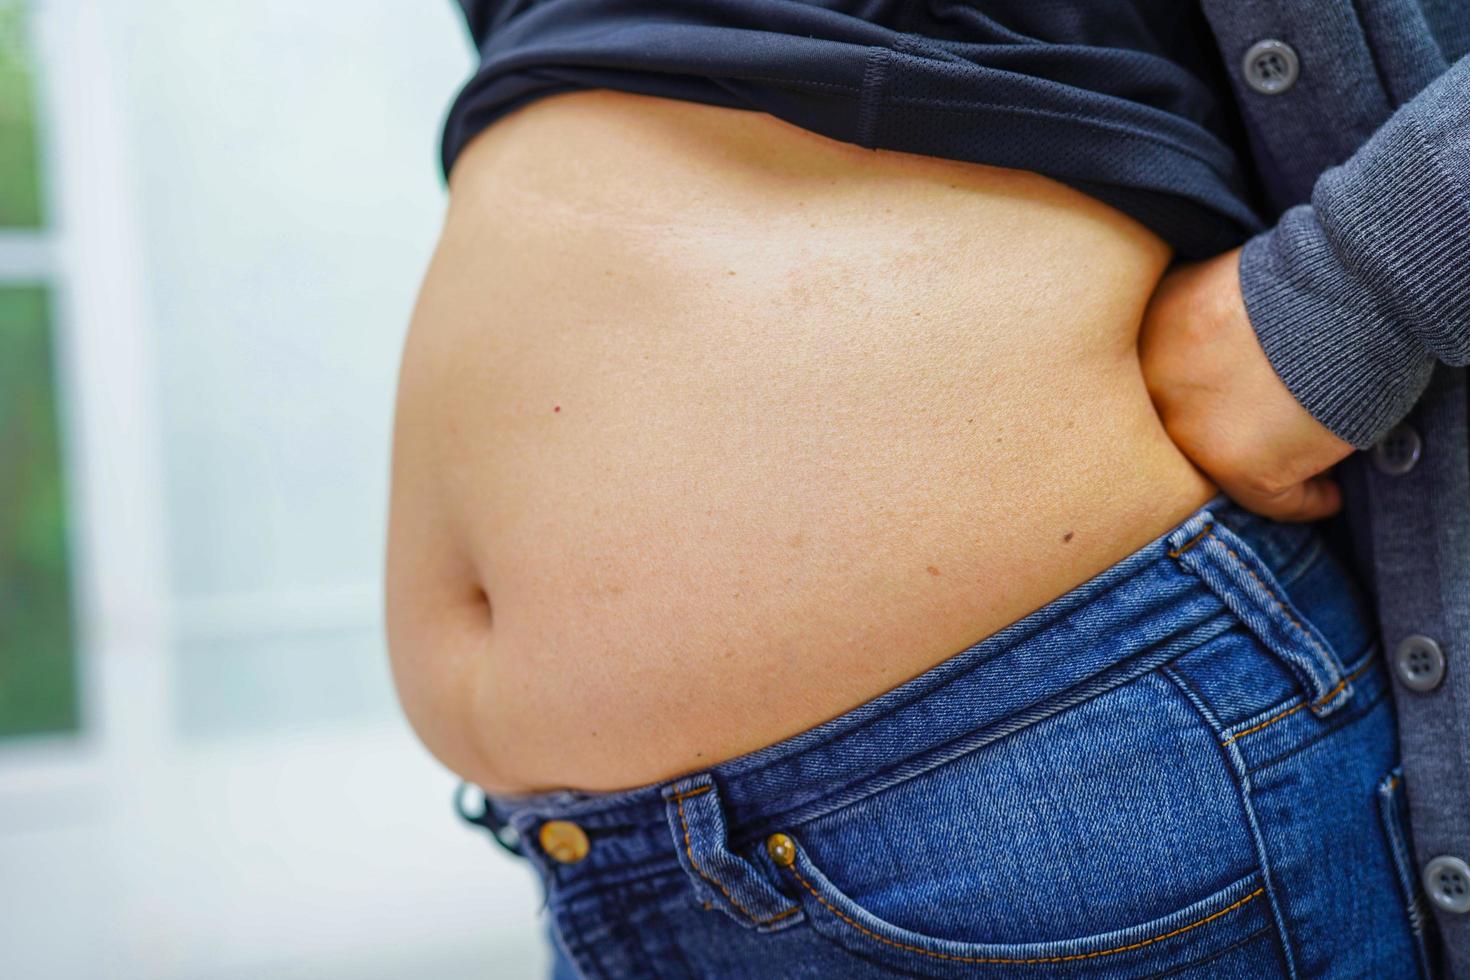 la mujer asiática muestra un vientre gordo de gran tamaño con sobrepeso y obesidad en la oficina. foto